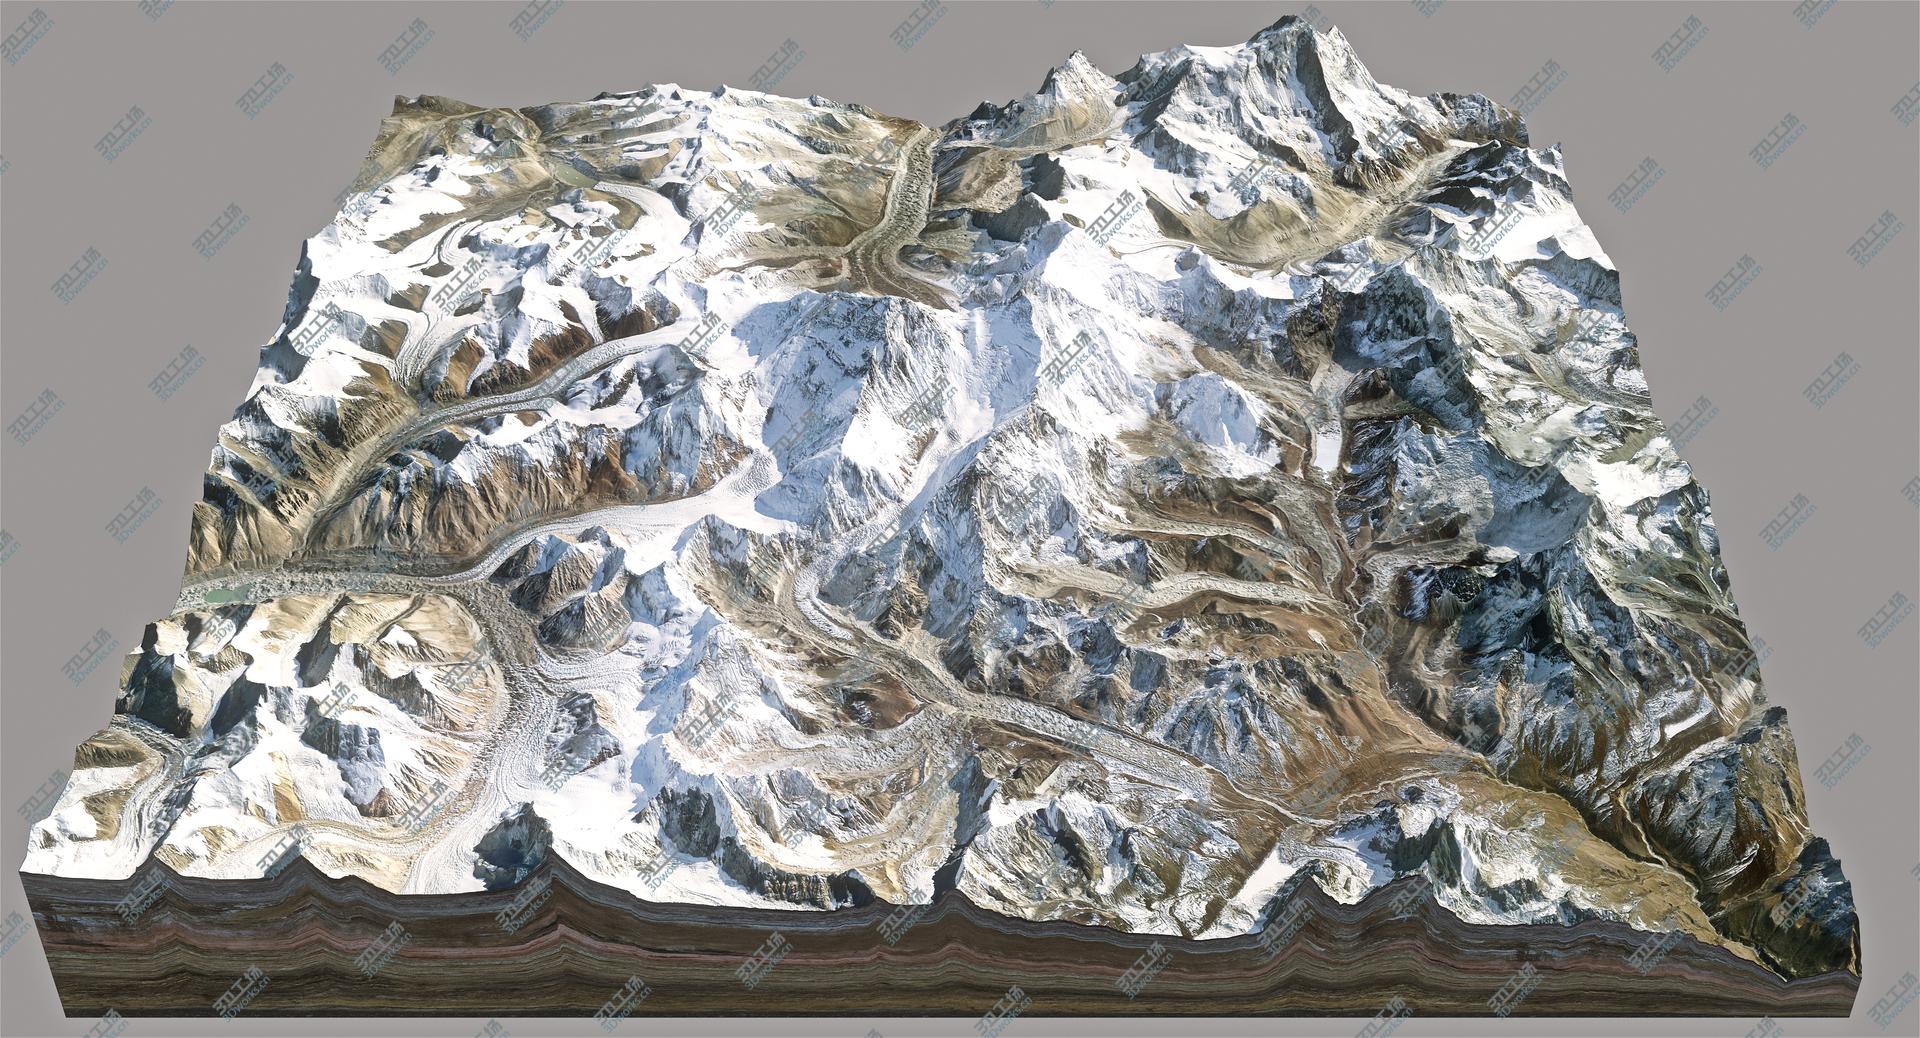 images/goods_img/20210319/Everest 8m Resolution model/2.jpg